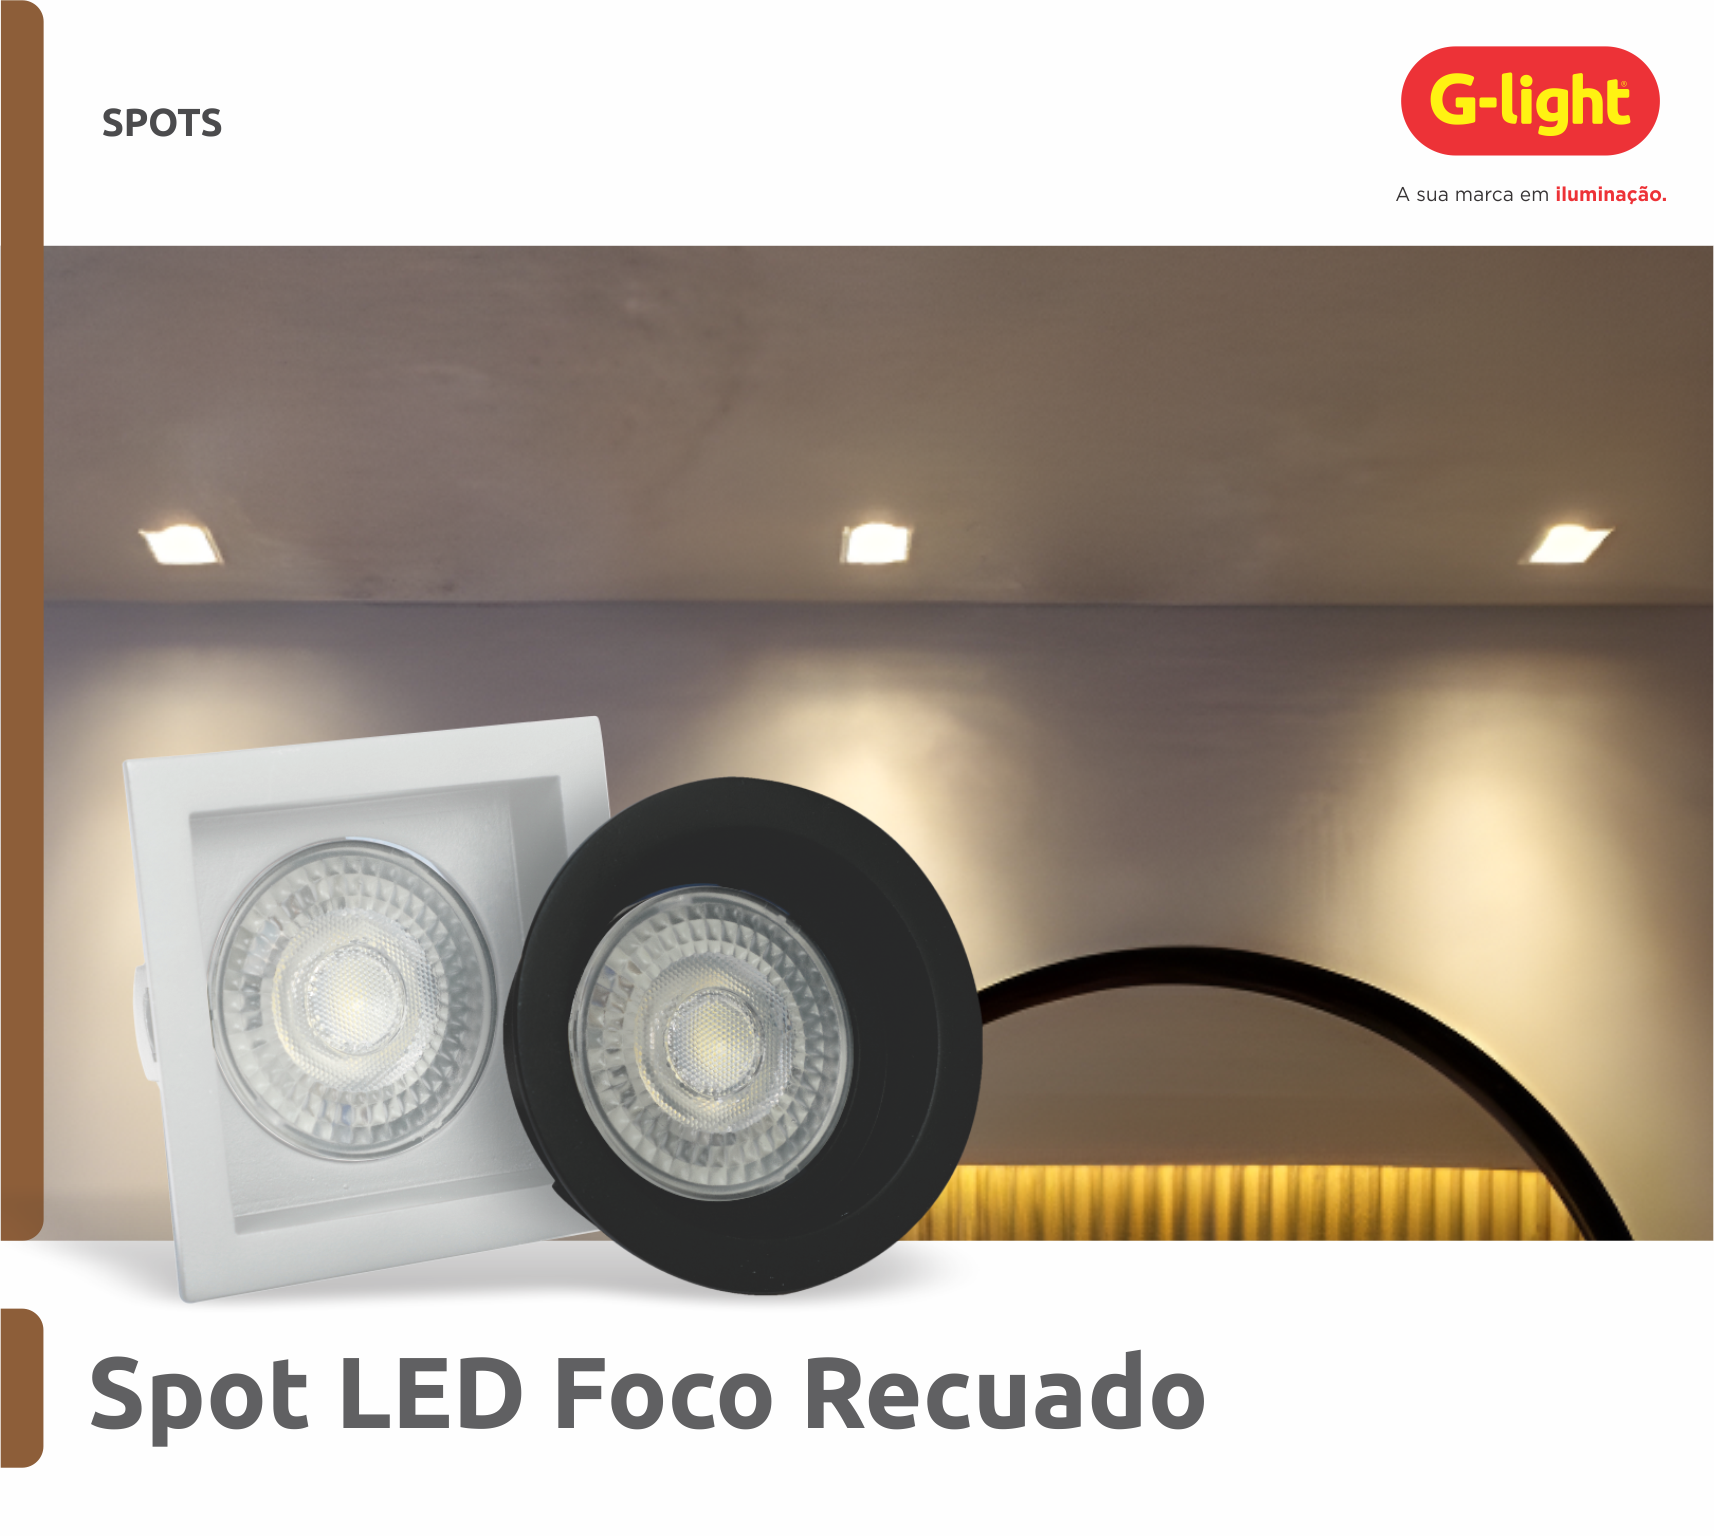 Spot LED Foco Recuado